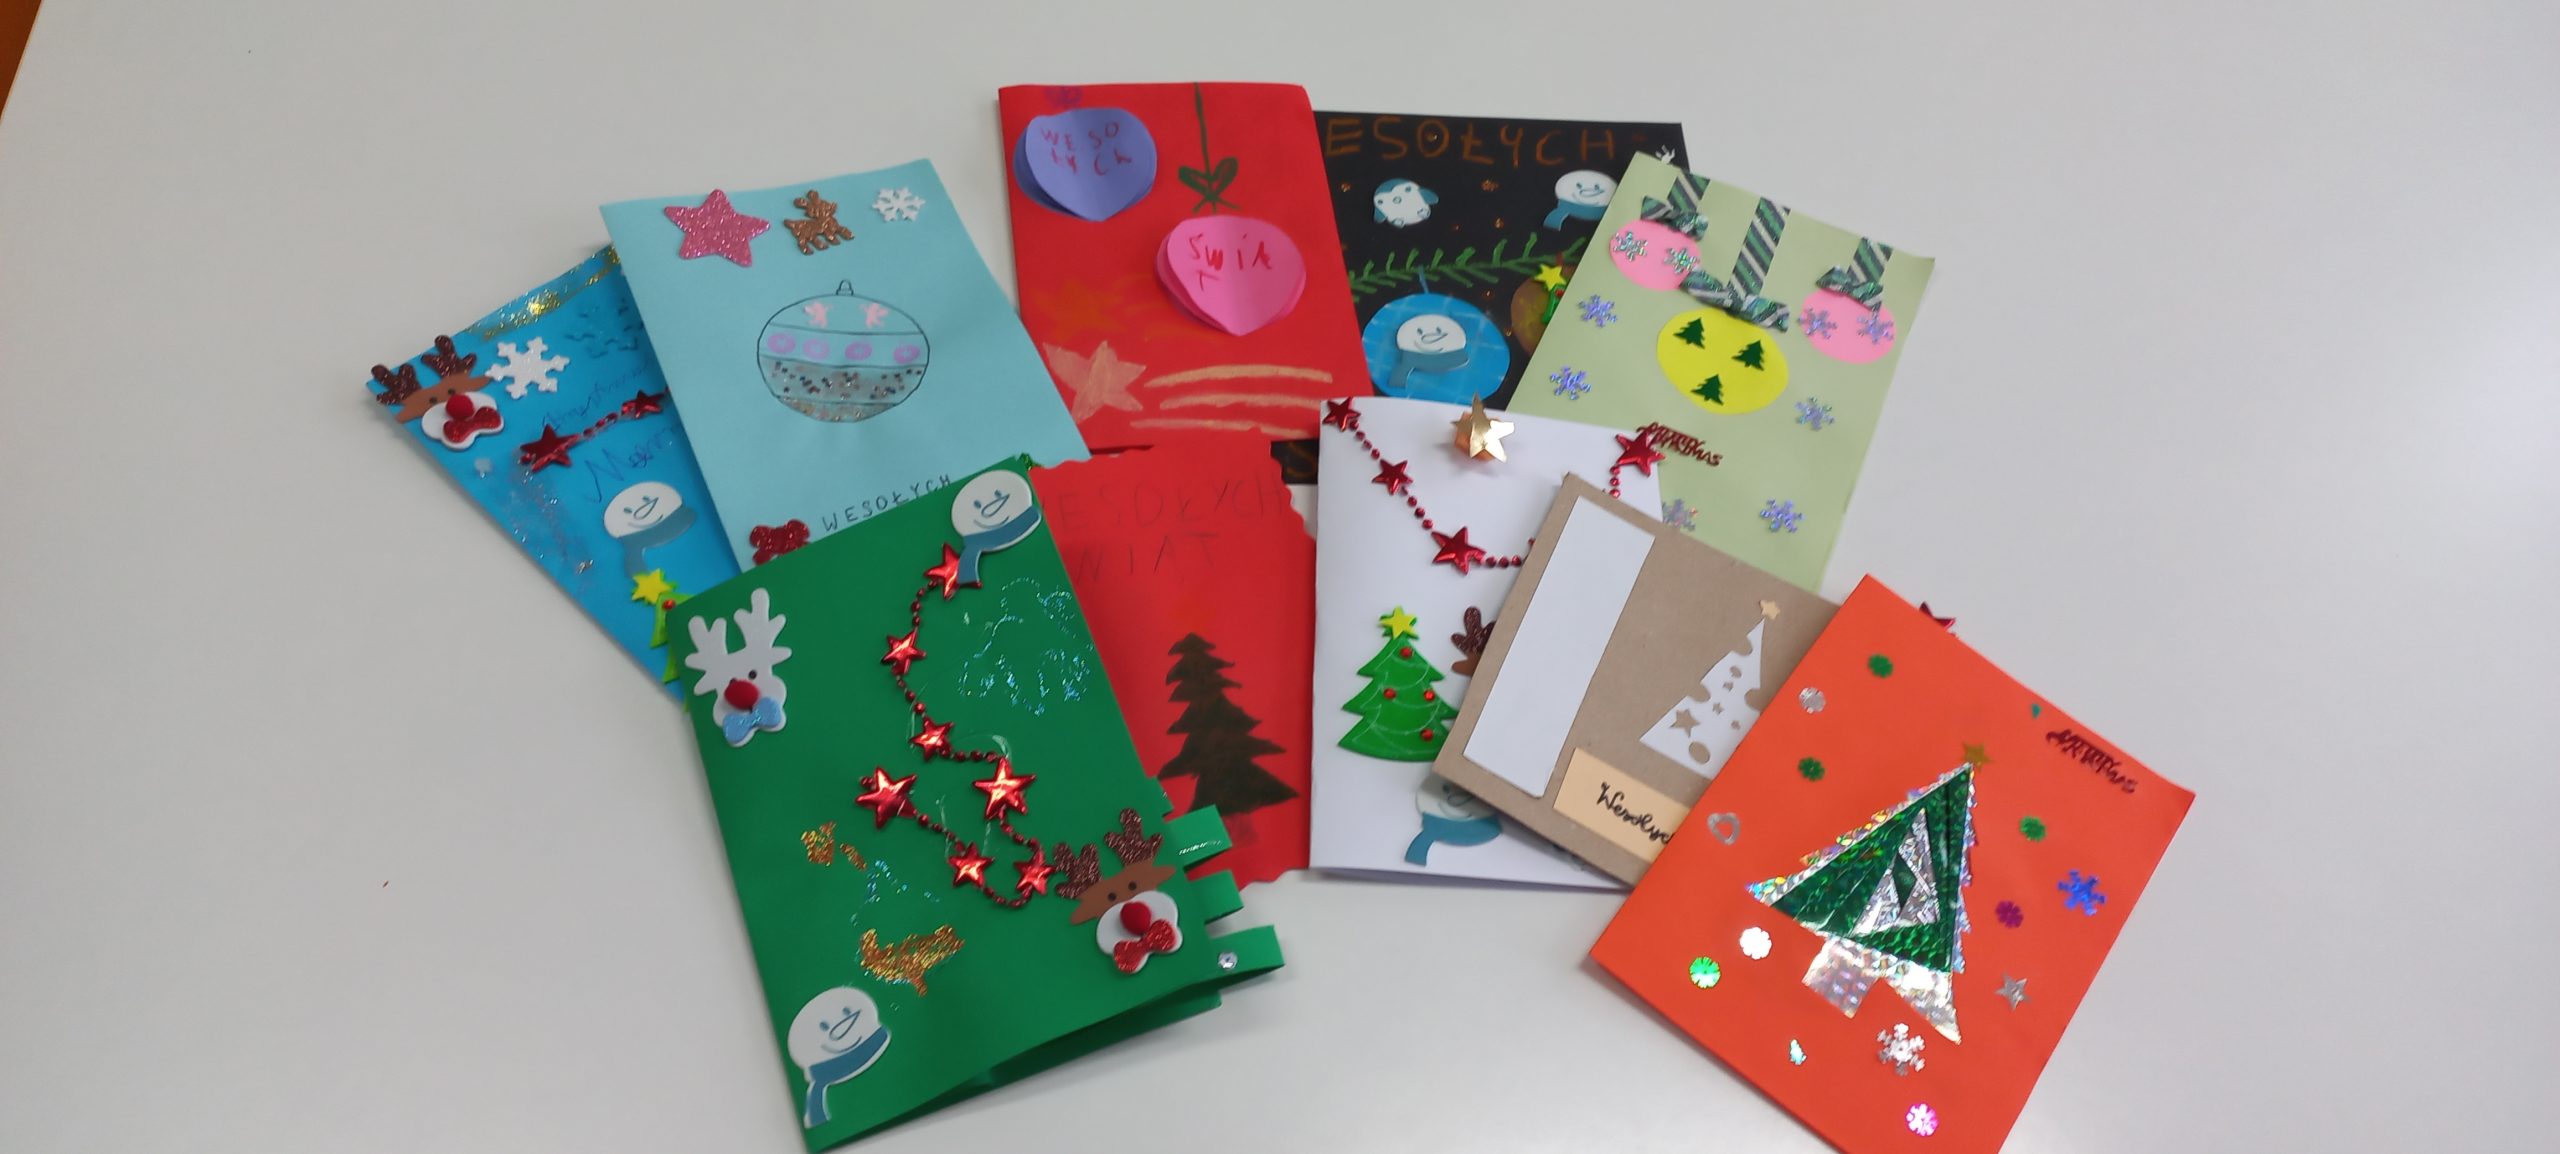 kartki bożonarodzeniowe wykonane z kolorowego papieru i ozdobione